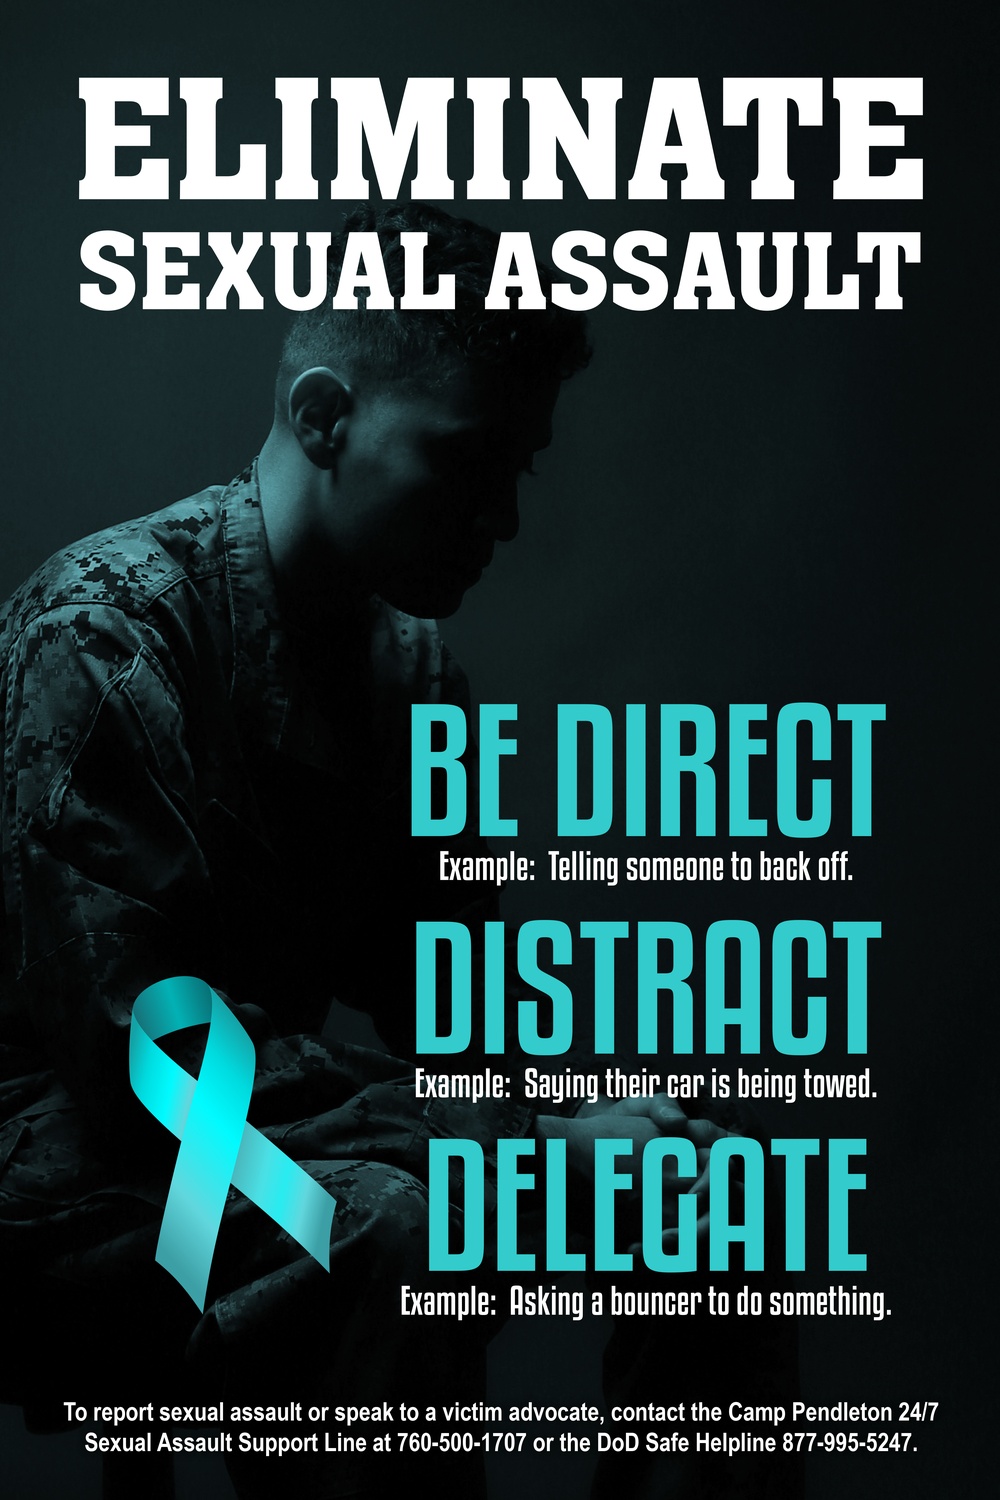 Sexual Assault Awareness: Eliminate 2